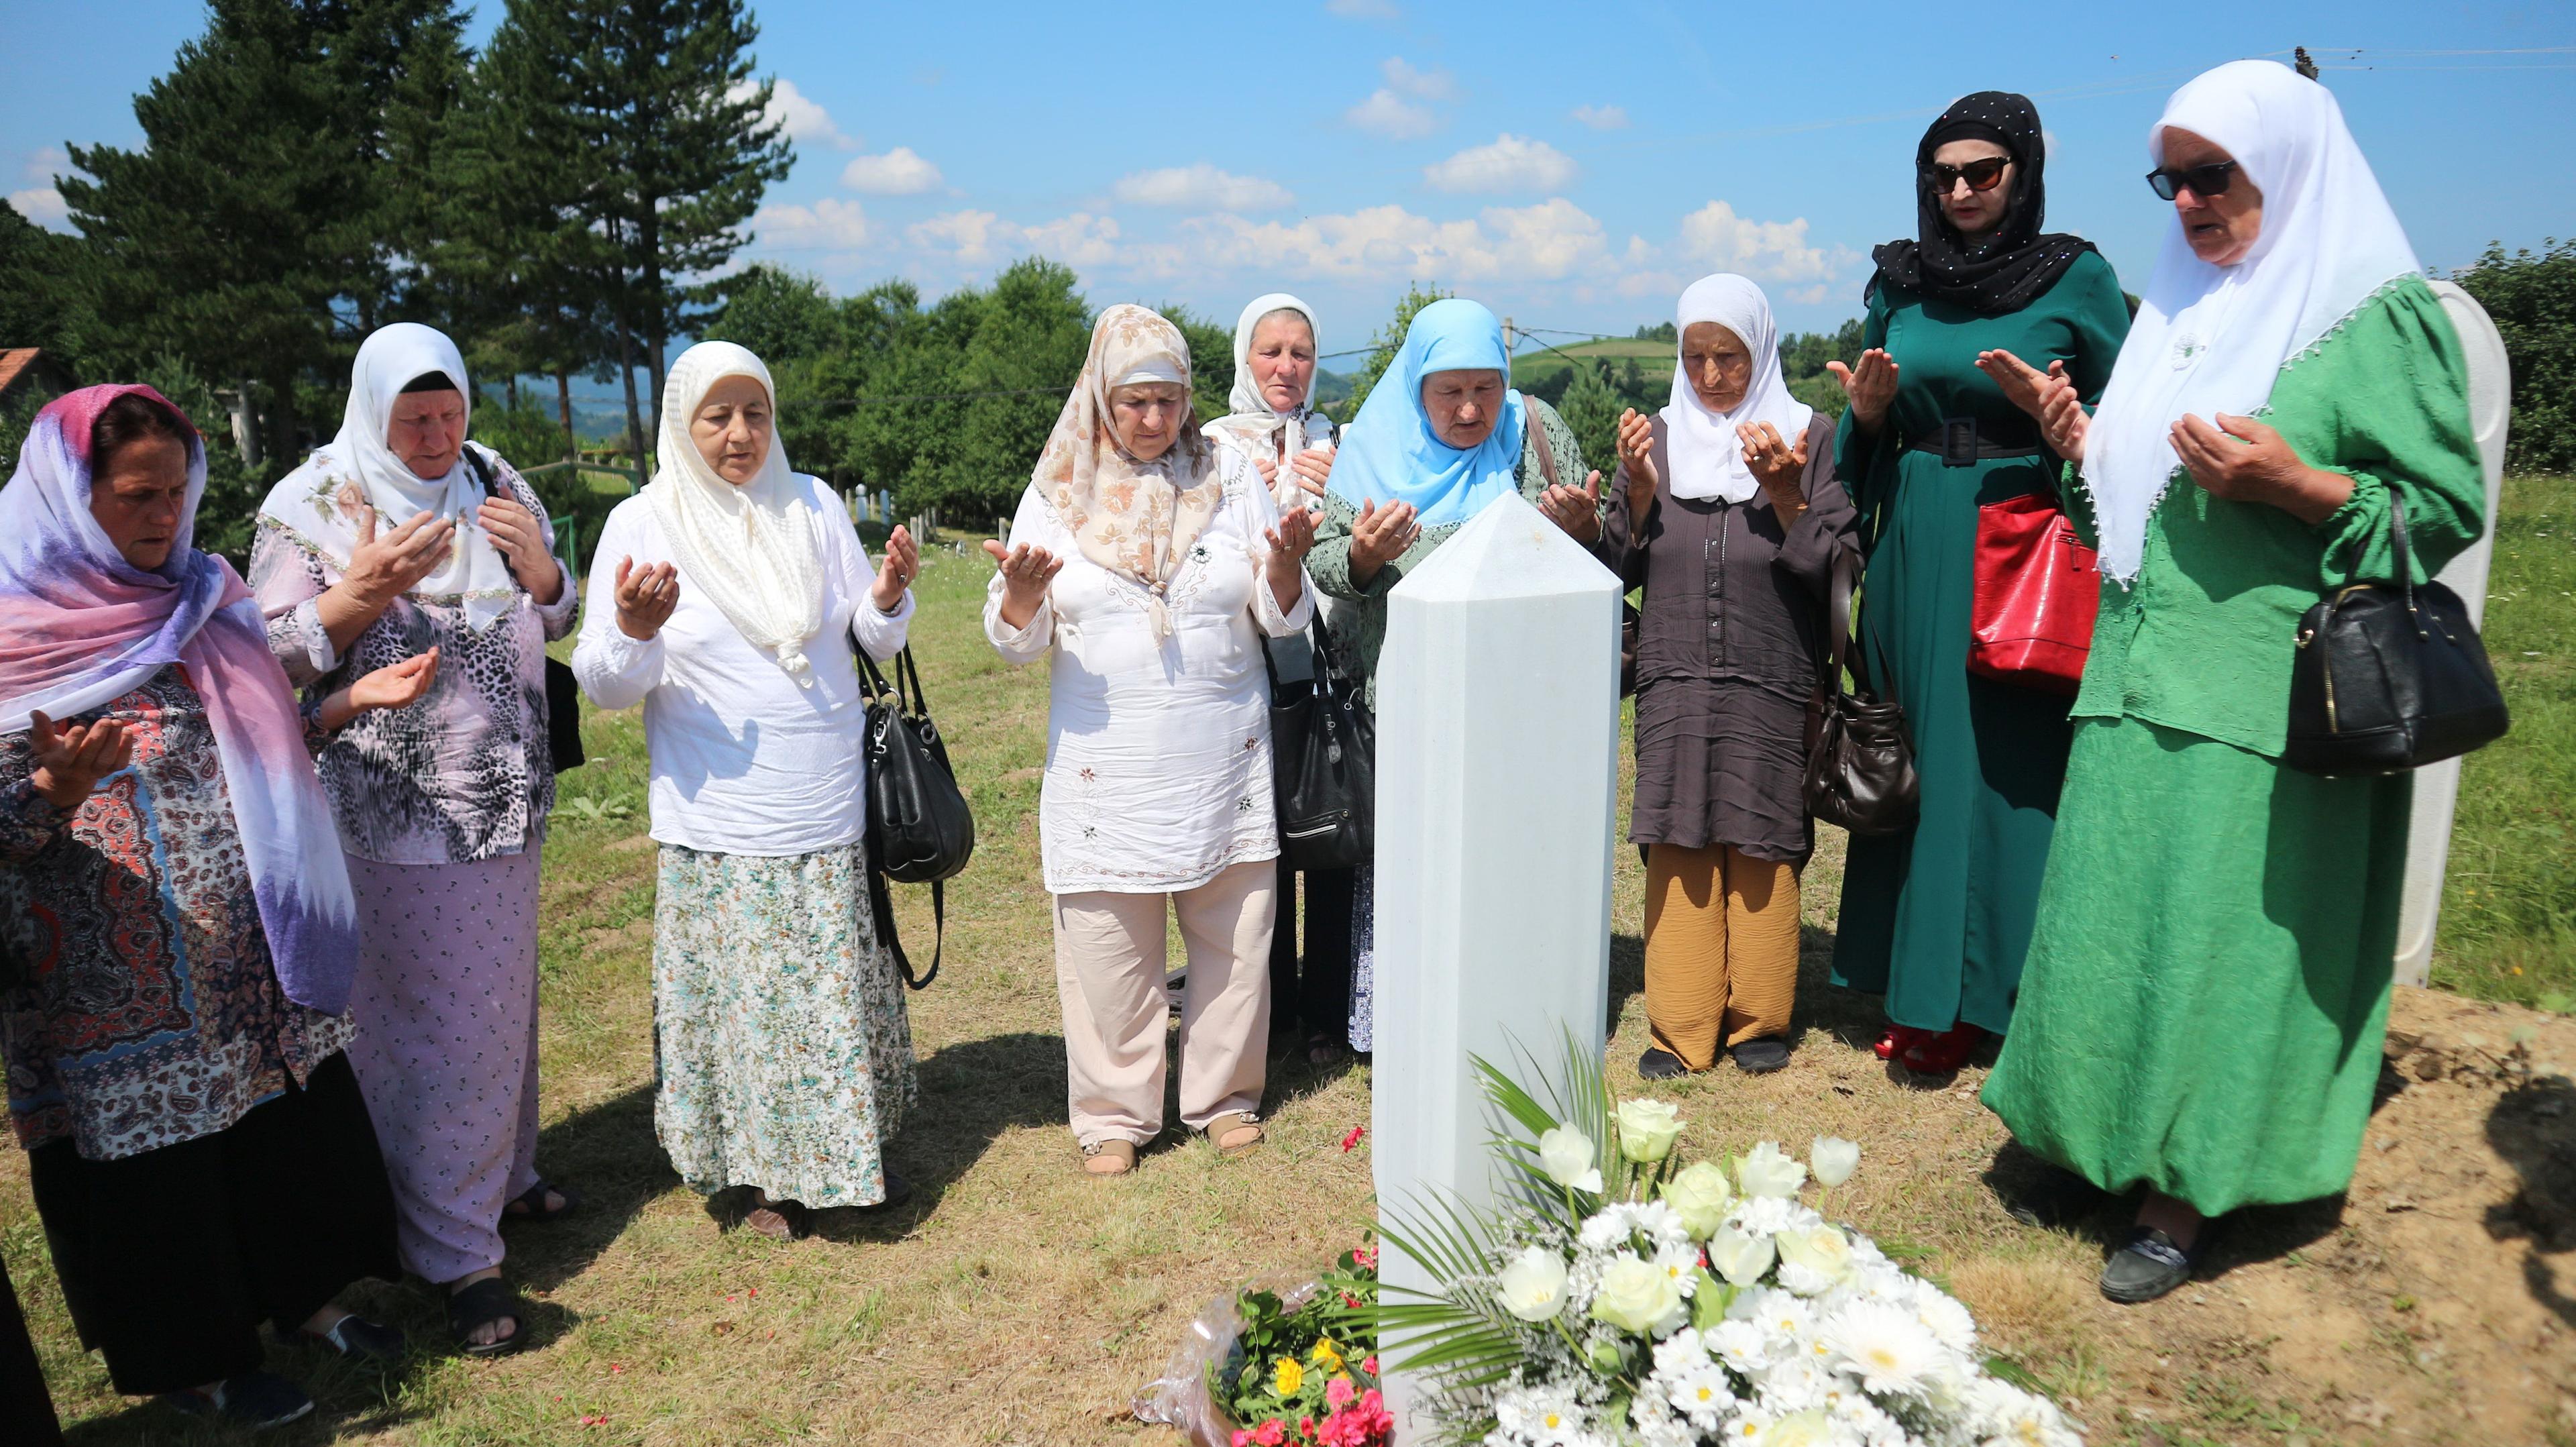 Udruženja "Srebreničke majke", predstavnici Medžlisa Islamske zajednice Srebrenica, danas su posjetili mezar u Bektićima kod Srebrenice - Avaz